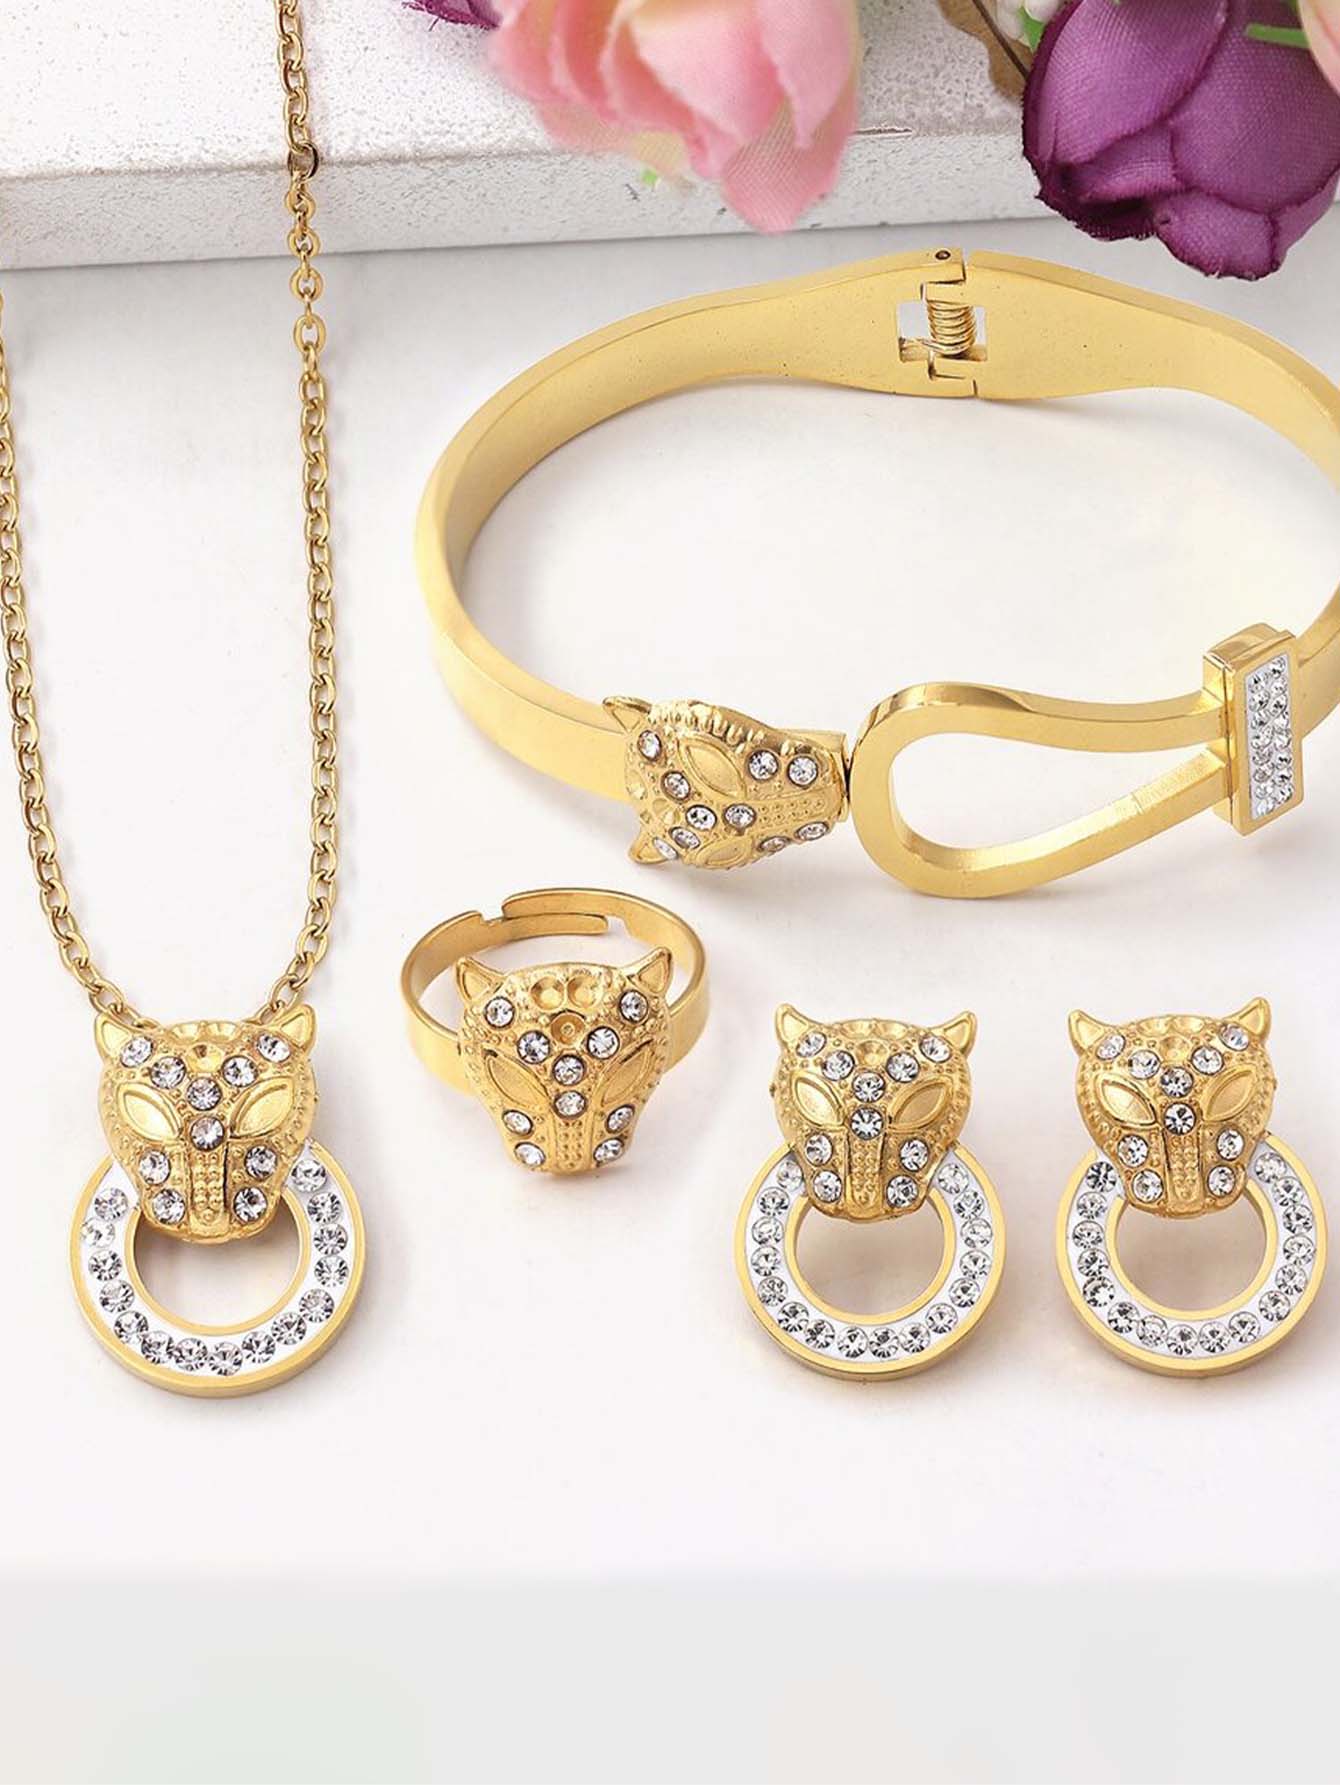 1set Rhinestone decor leopard necklace, bracelet, earrings & ring jewelry set - Gold